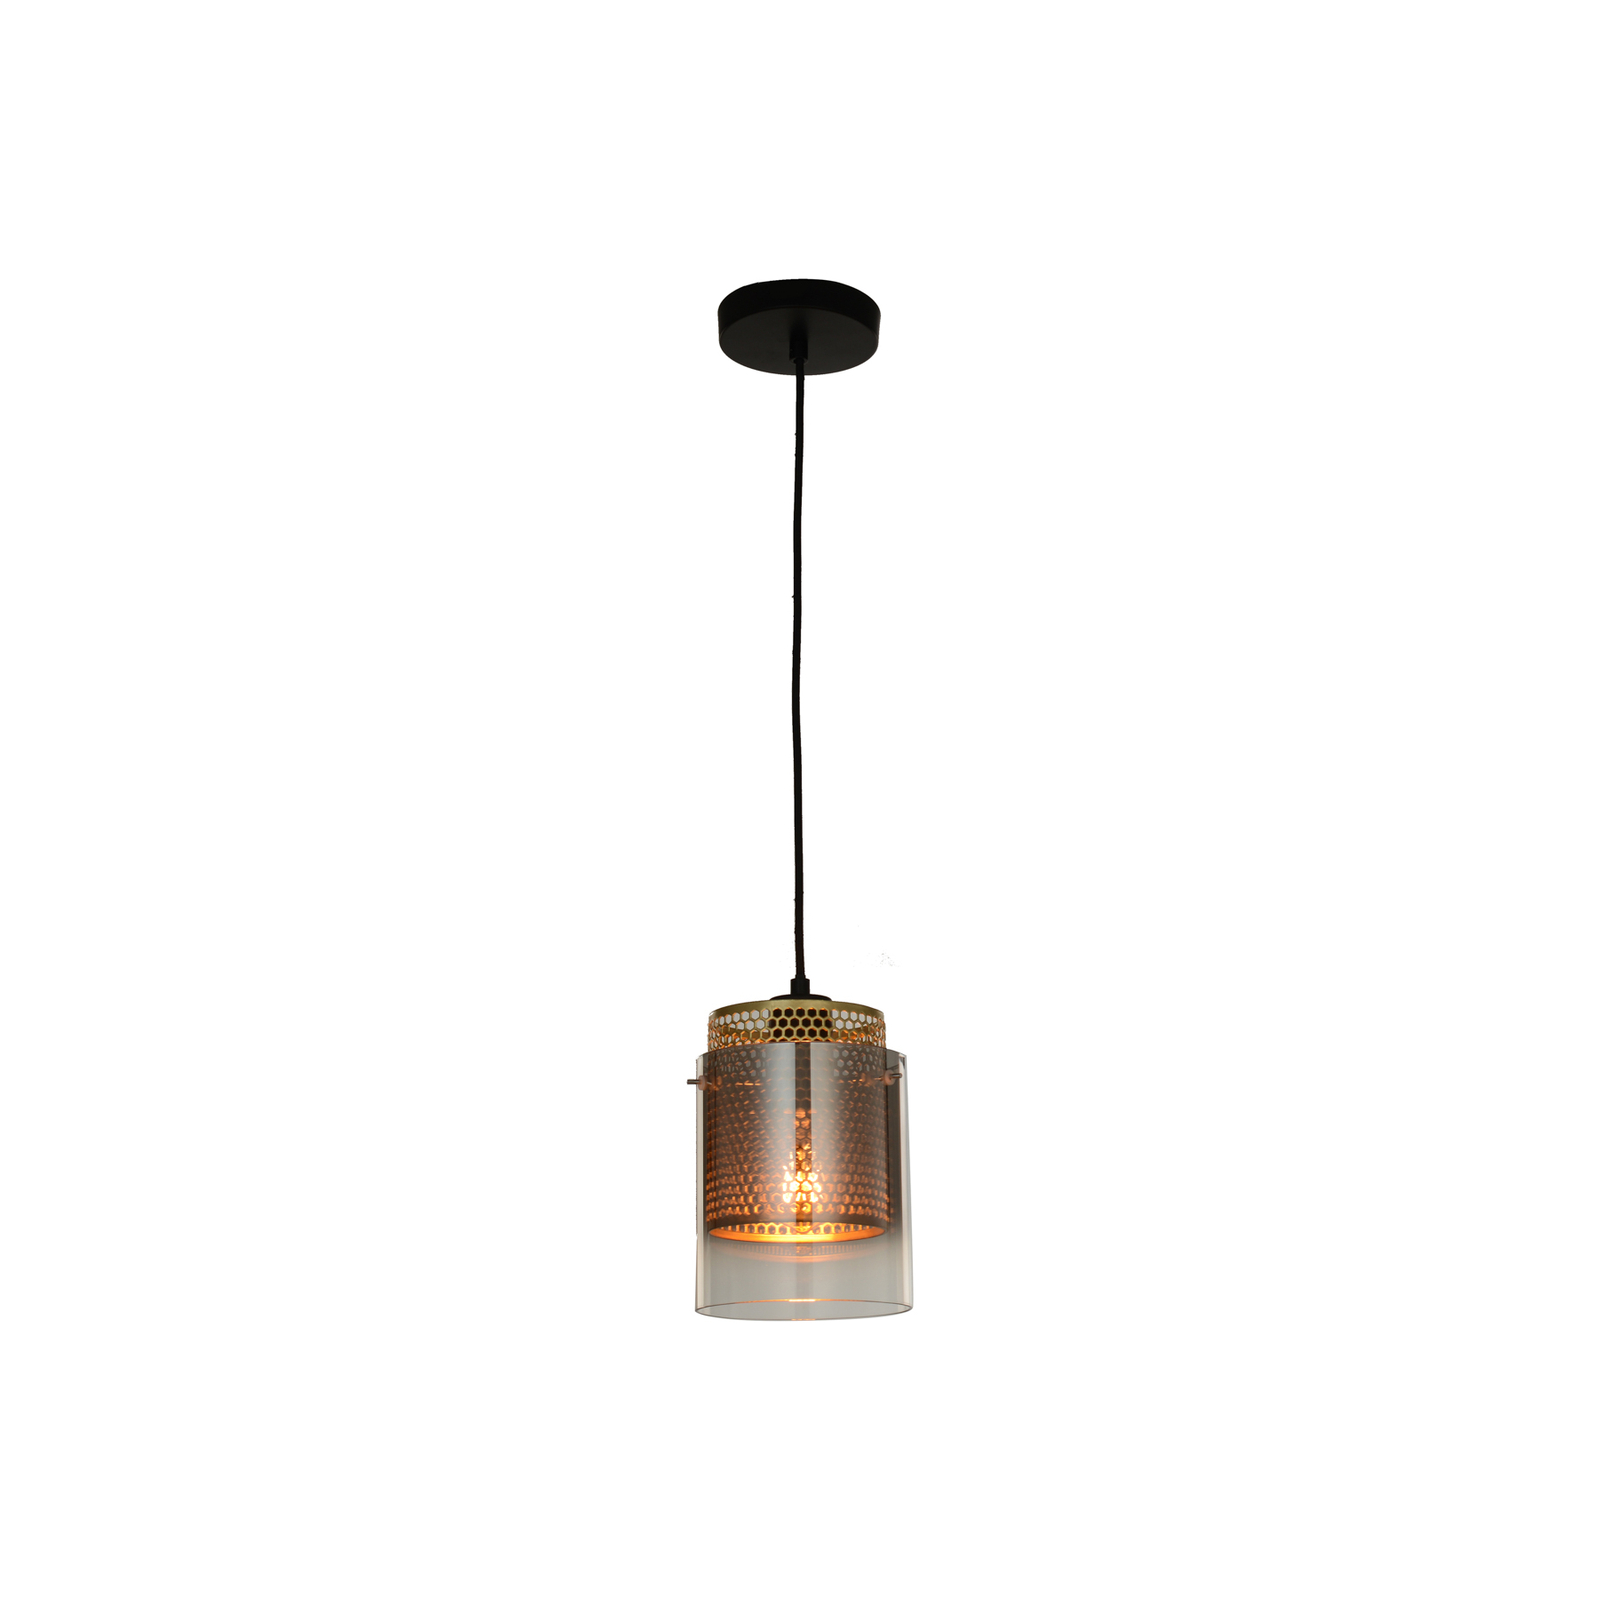 Lucande Sterzy pendant light, Ø 15 cm, grey, glass, E27